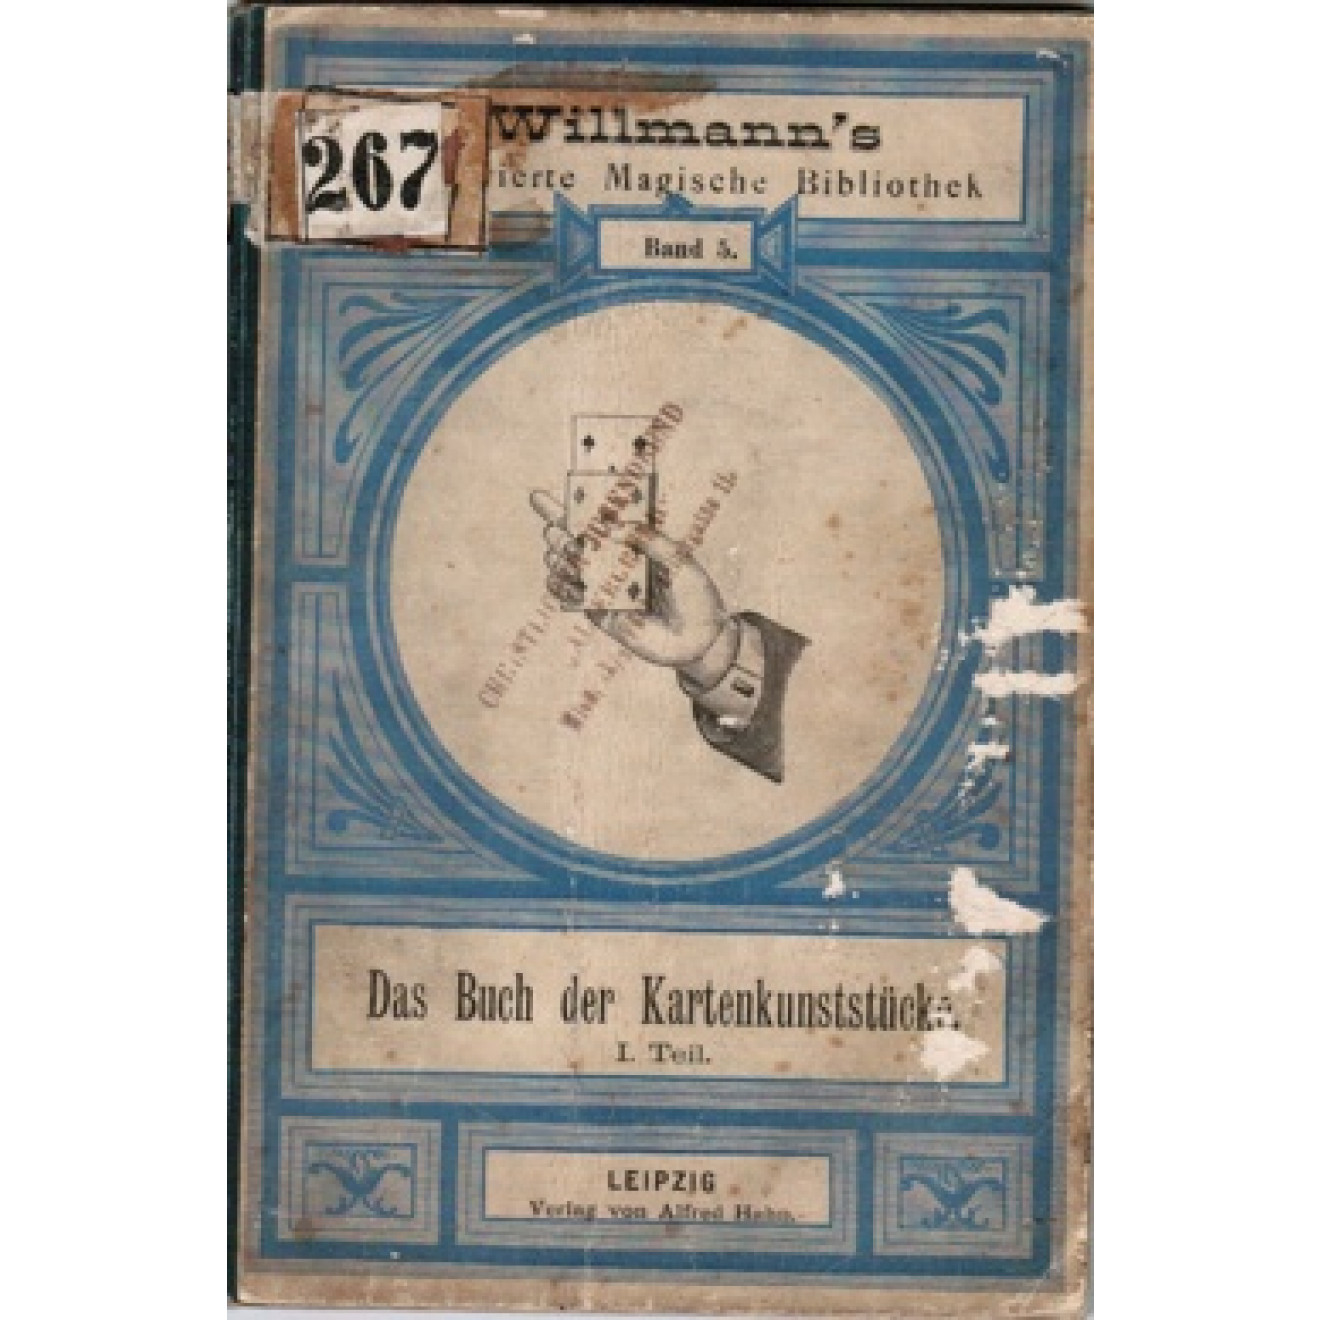 Willmanns Illustrierte Magische Bibliothek Band 5. - Das Buch der Kartenkunststücke